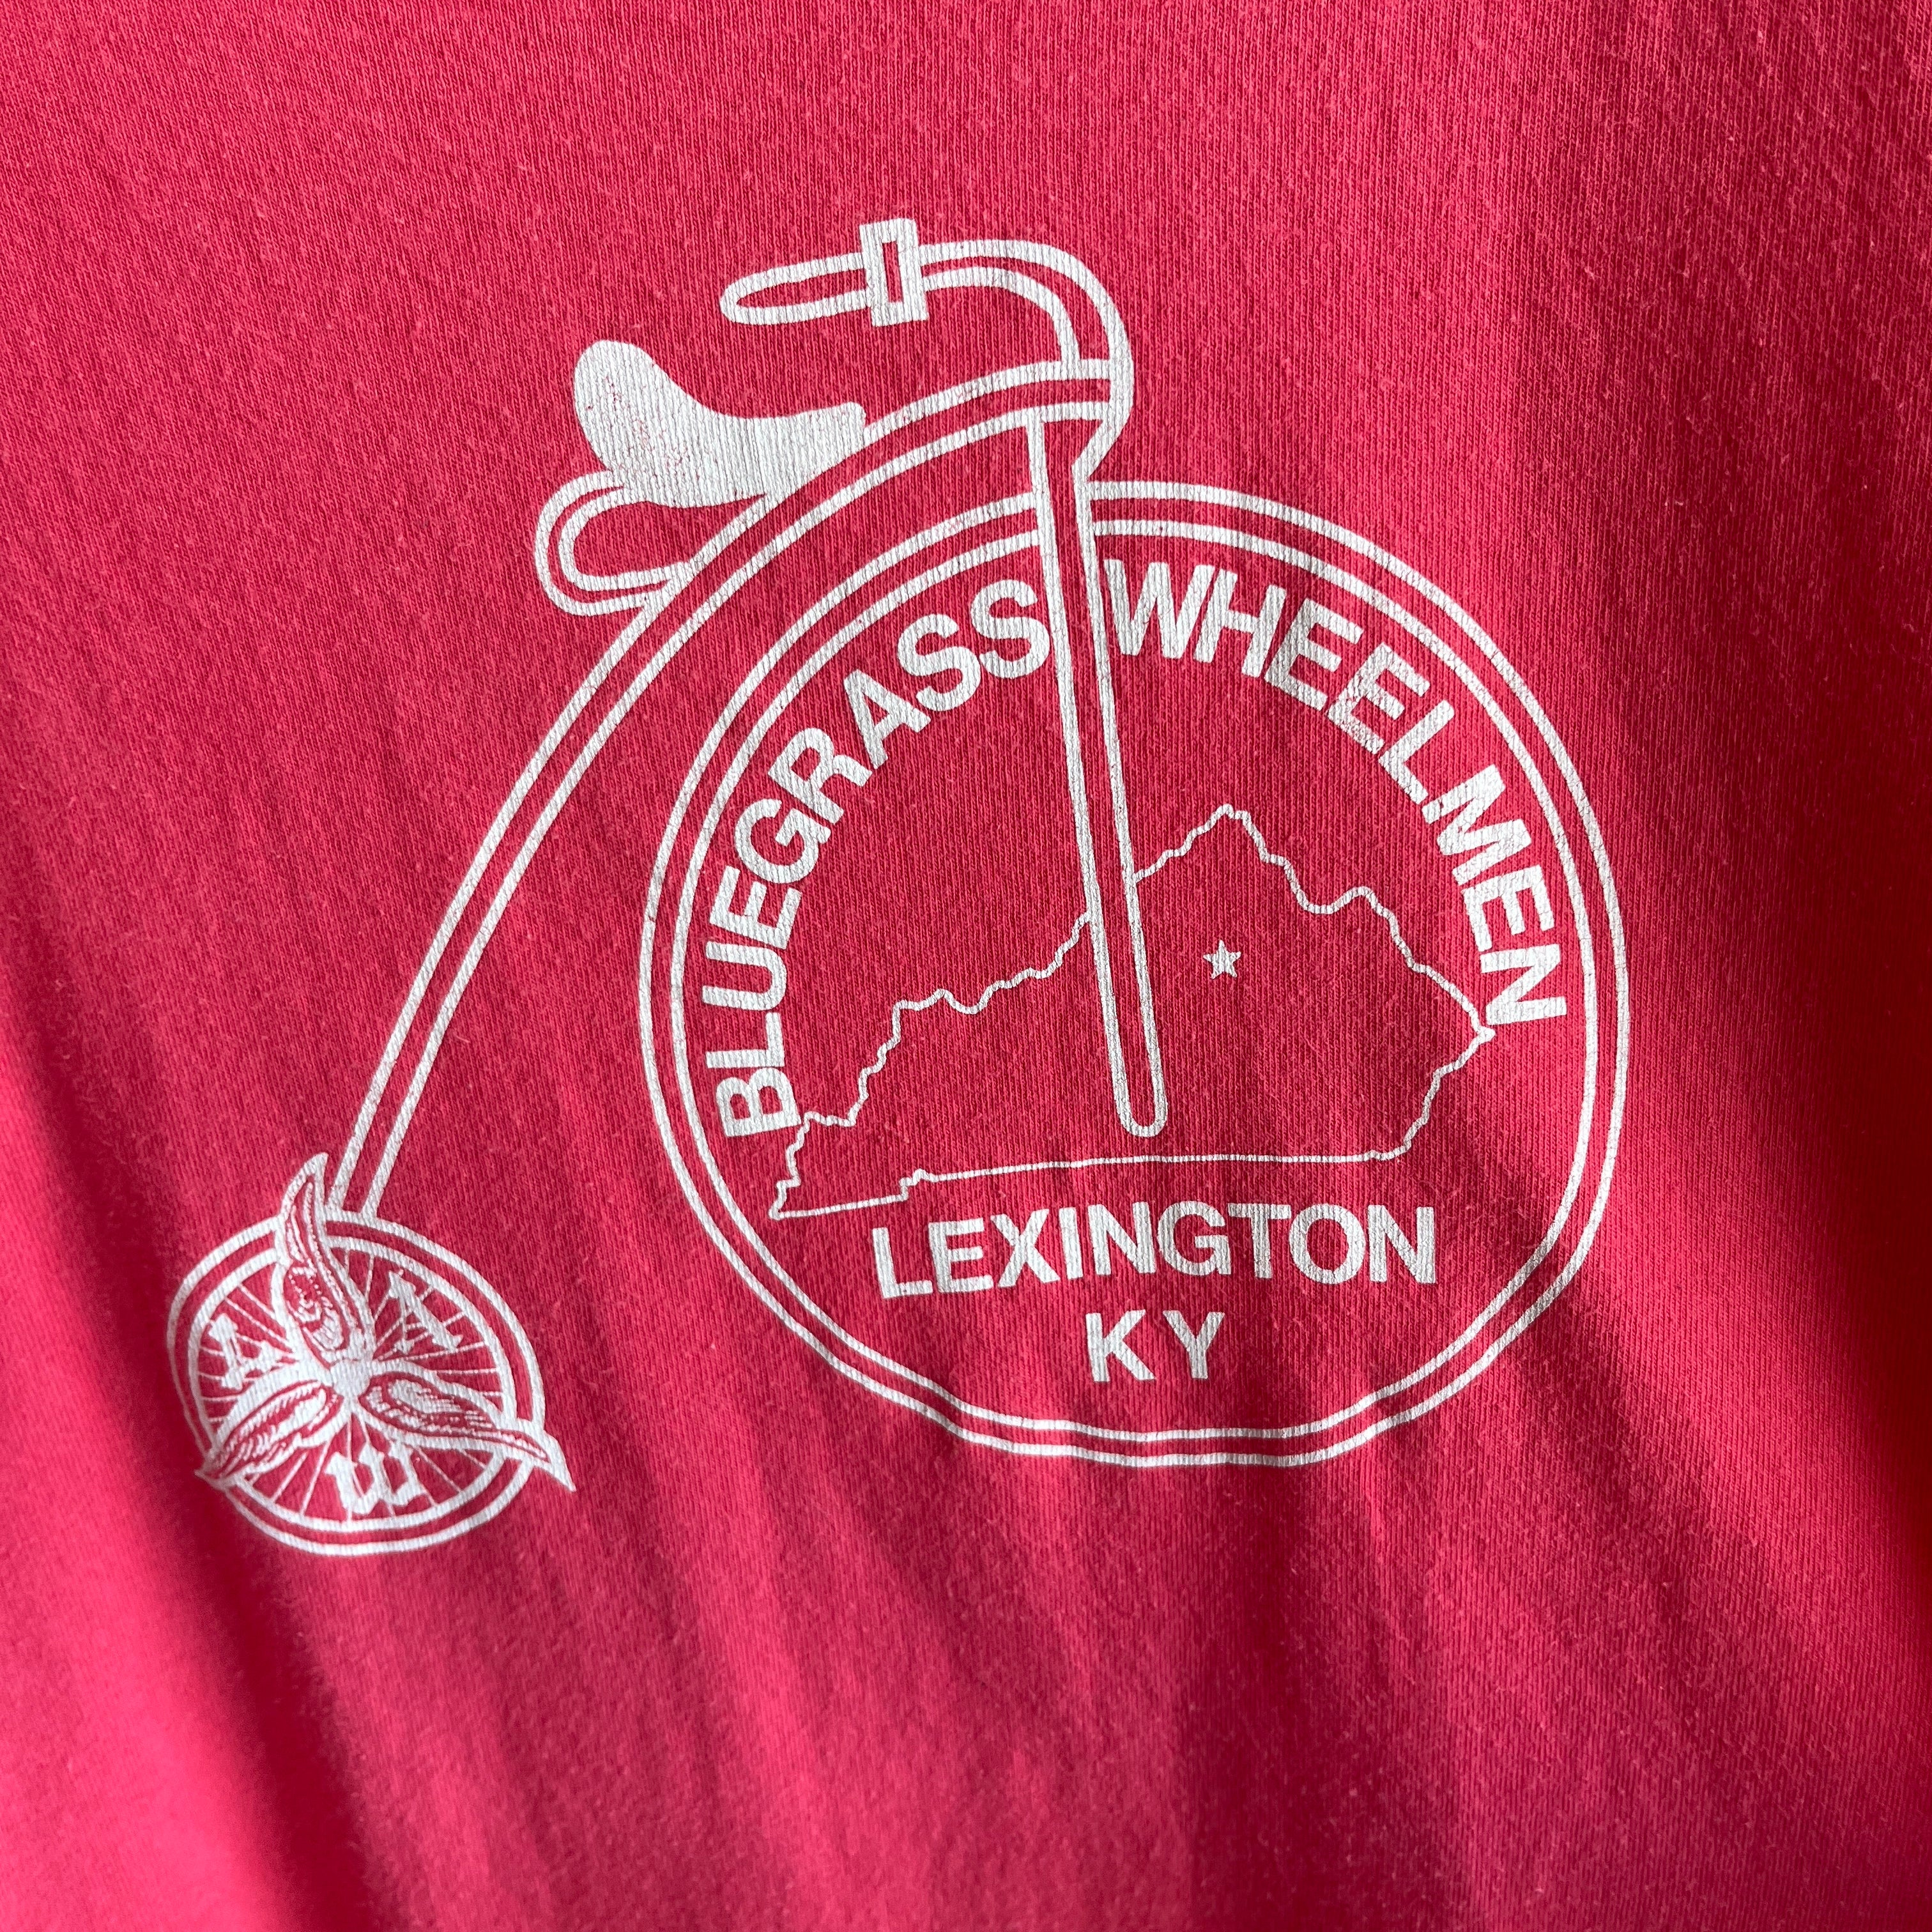 1980s Bluegrass Wheelmen Bike Club in Lexington, KY T-Shirt